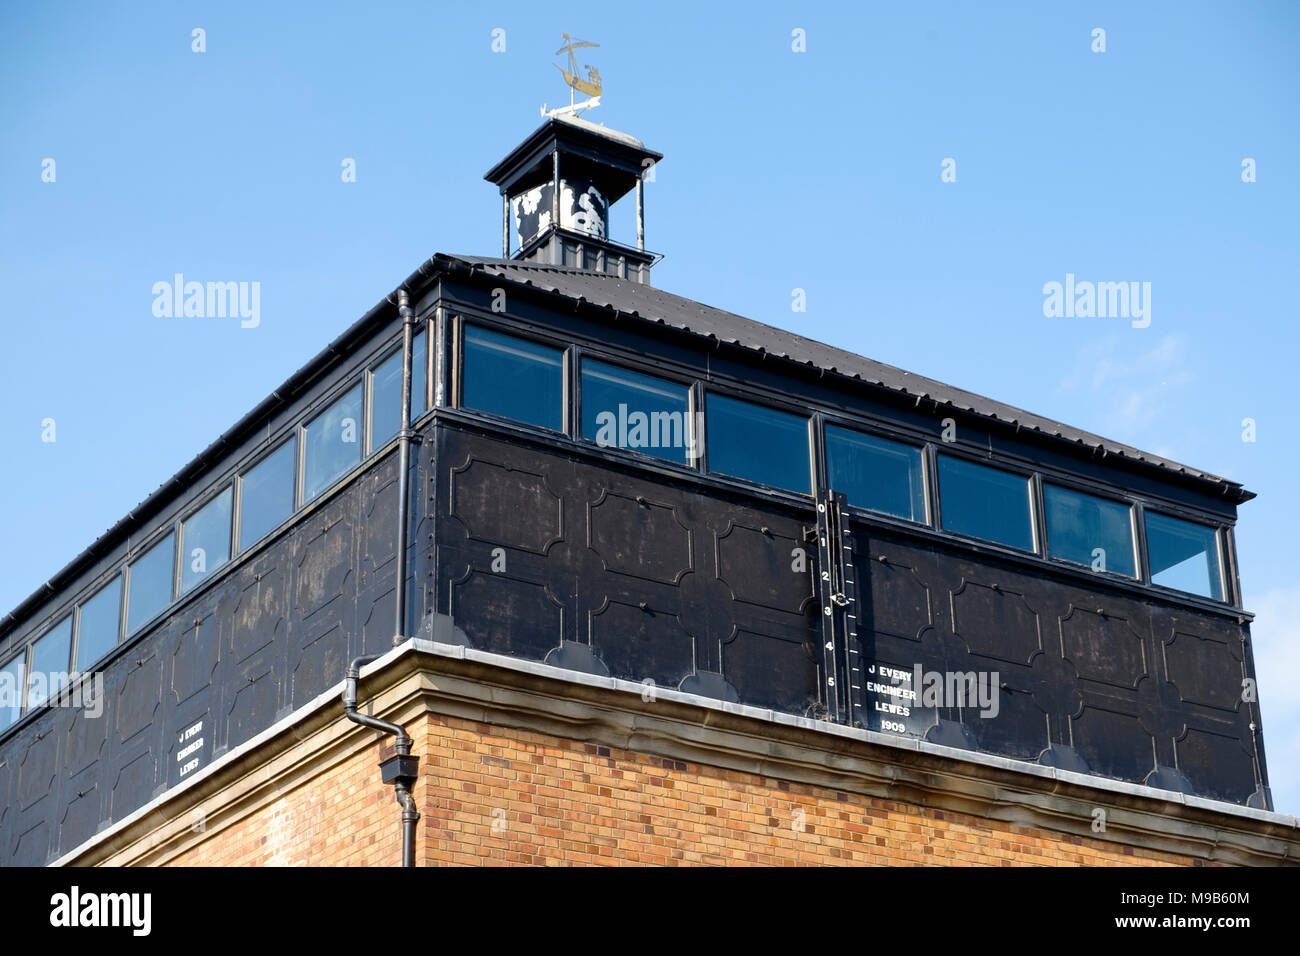 Die Betrachtung der Foredown Tower Camera obscura Gebäude, 1909 erbaut. Brighton & Hove, Großbritannien Stockfoto